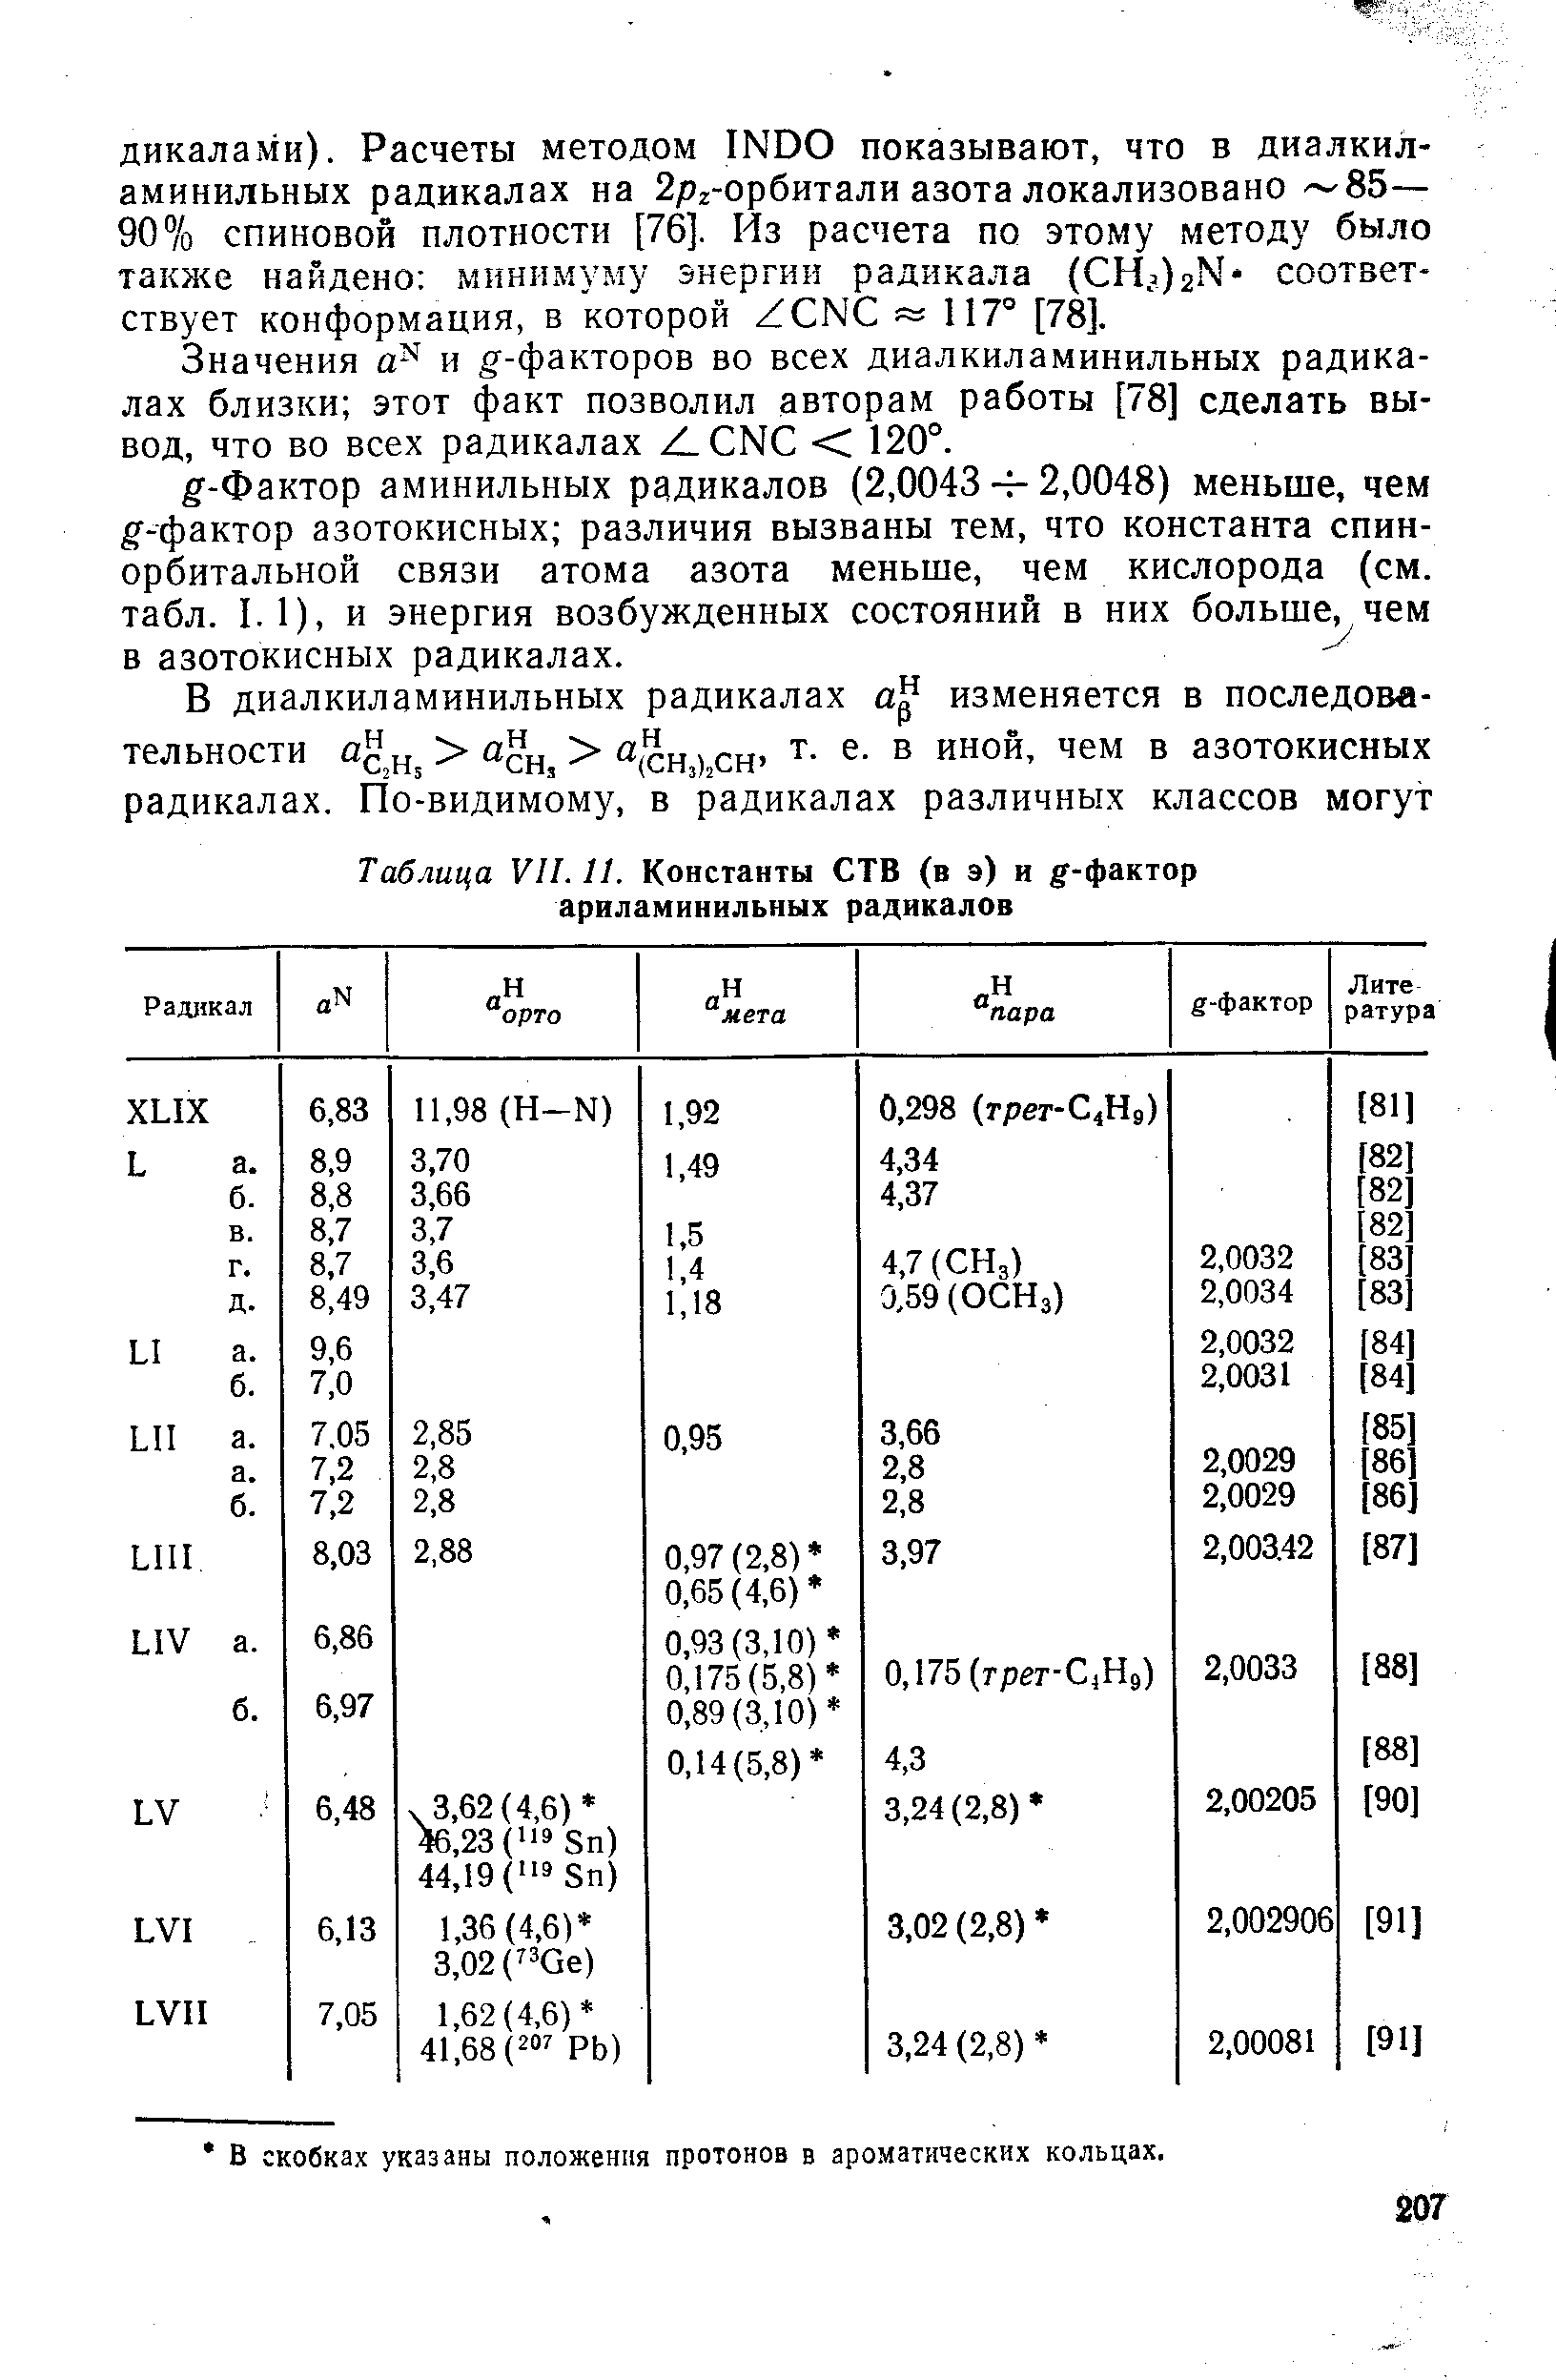 Значения и g -факторов во всех диалкиламинильных радикалах близки этот факт позволил авторам работы [78] сделать вывод, что во всех радикалах ZL N С 120°.